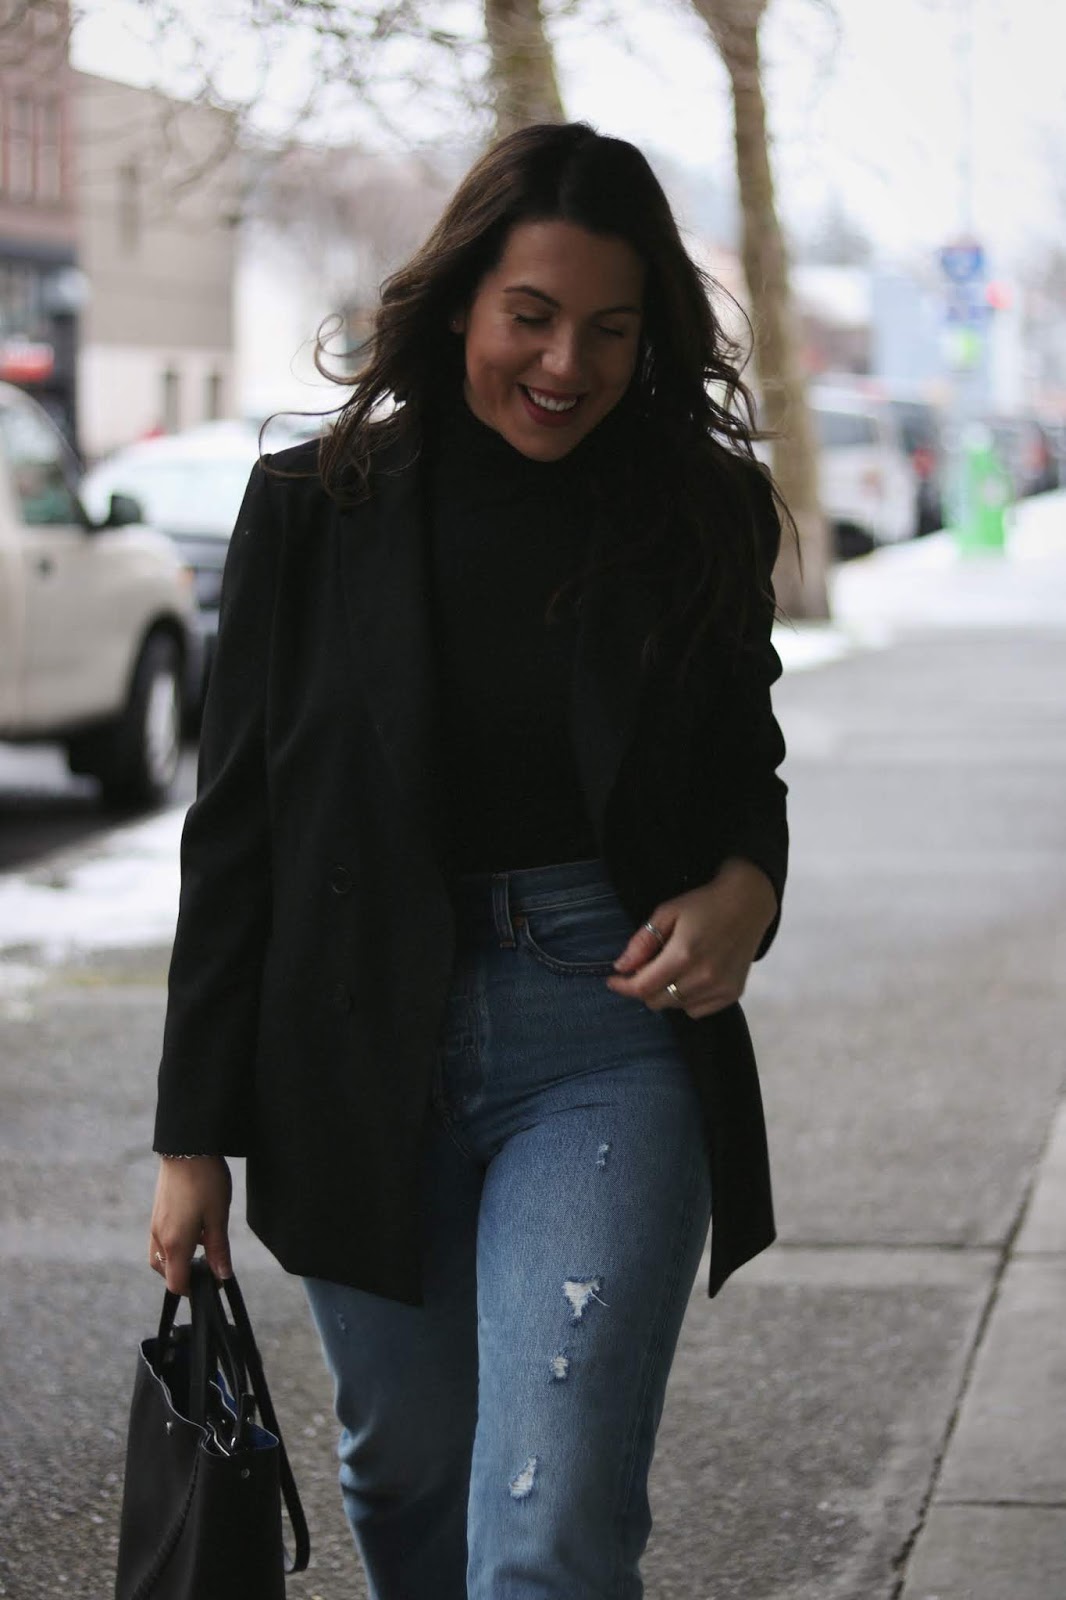 Le Chateau black blazer outfit vancouver blogger aleesha harris levis wedgie jeans proenza schouler bag